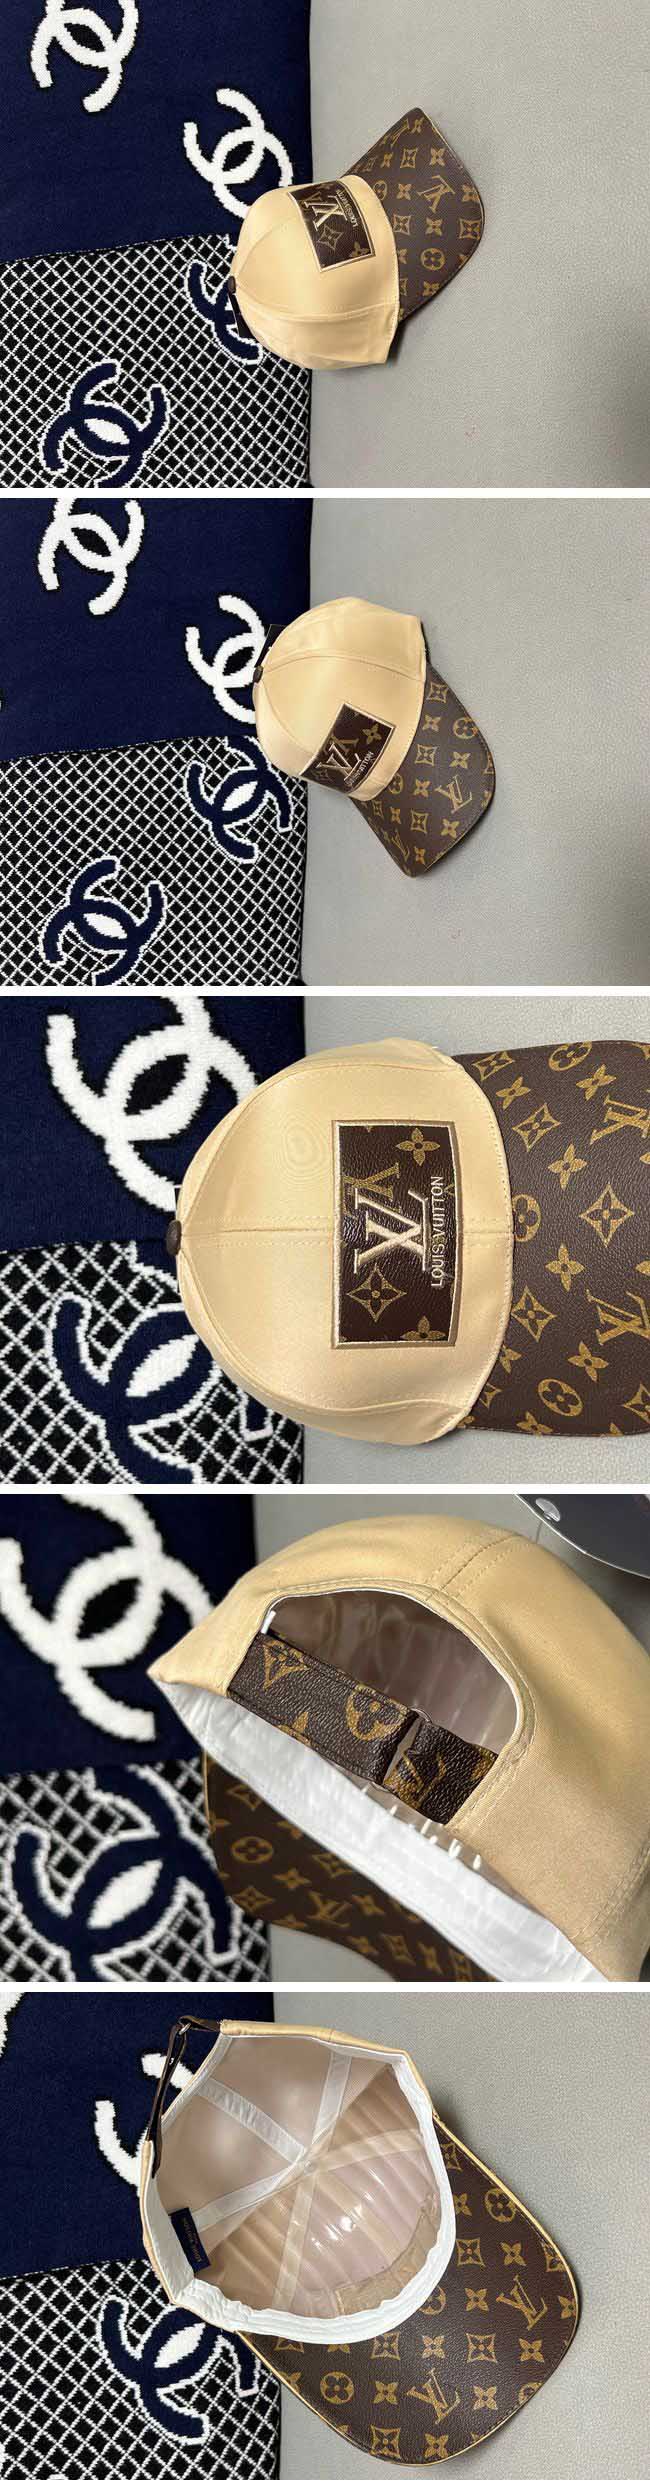 Louis Vuitton Monogram LV Box Logo Cap ルイヴィトン モノグラム LV ボックス ロゴ キャップ ブラウン